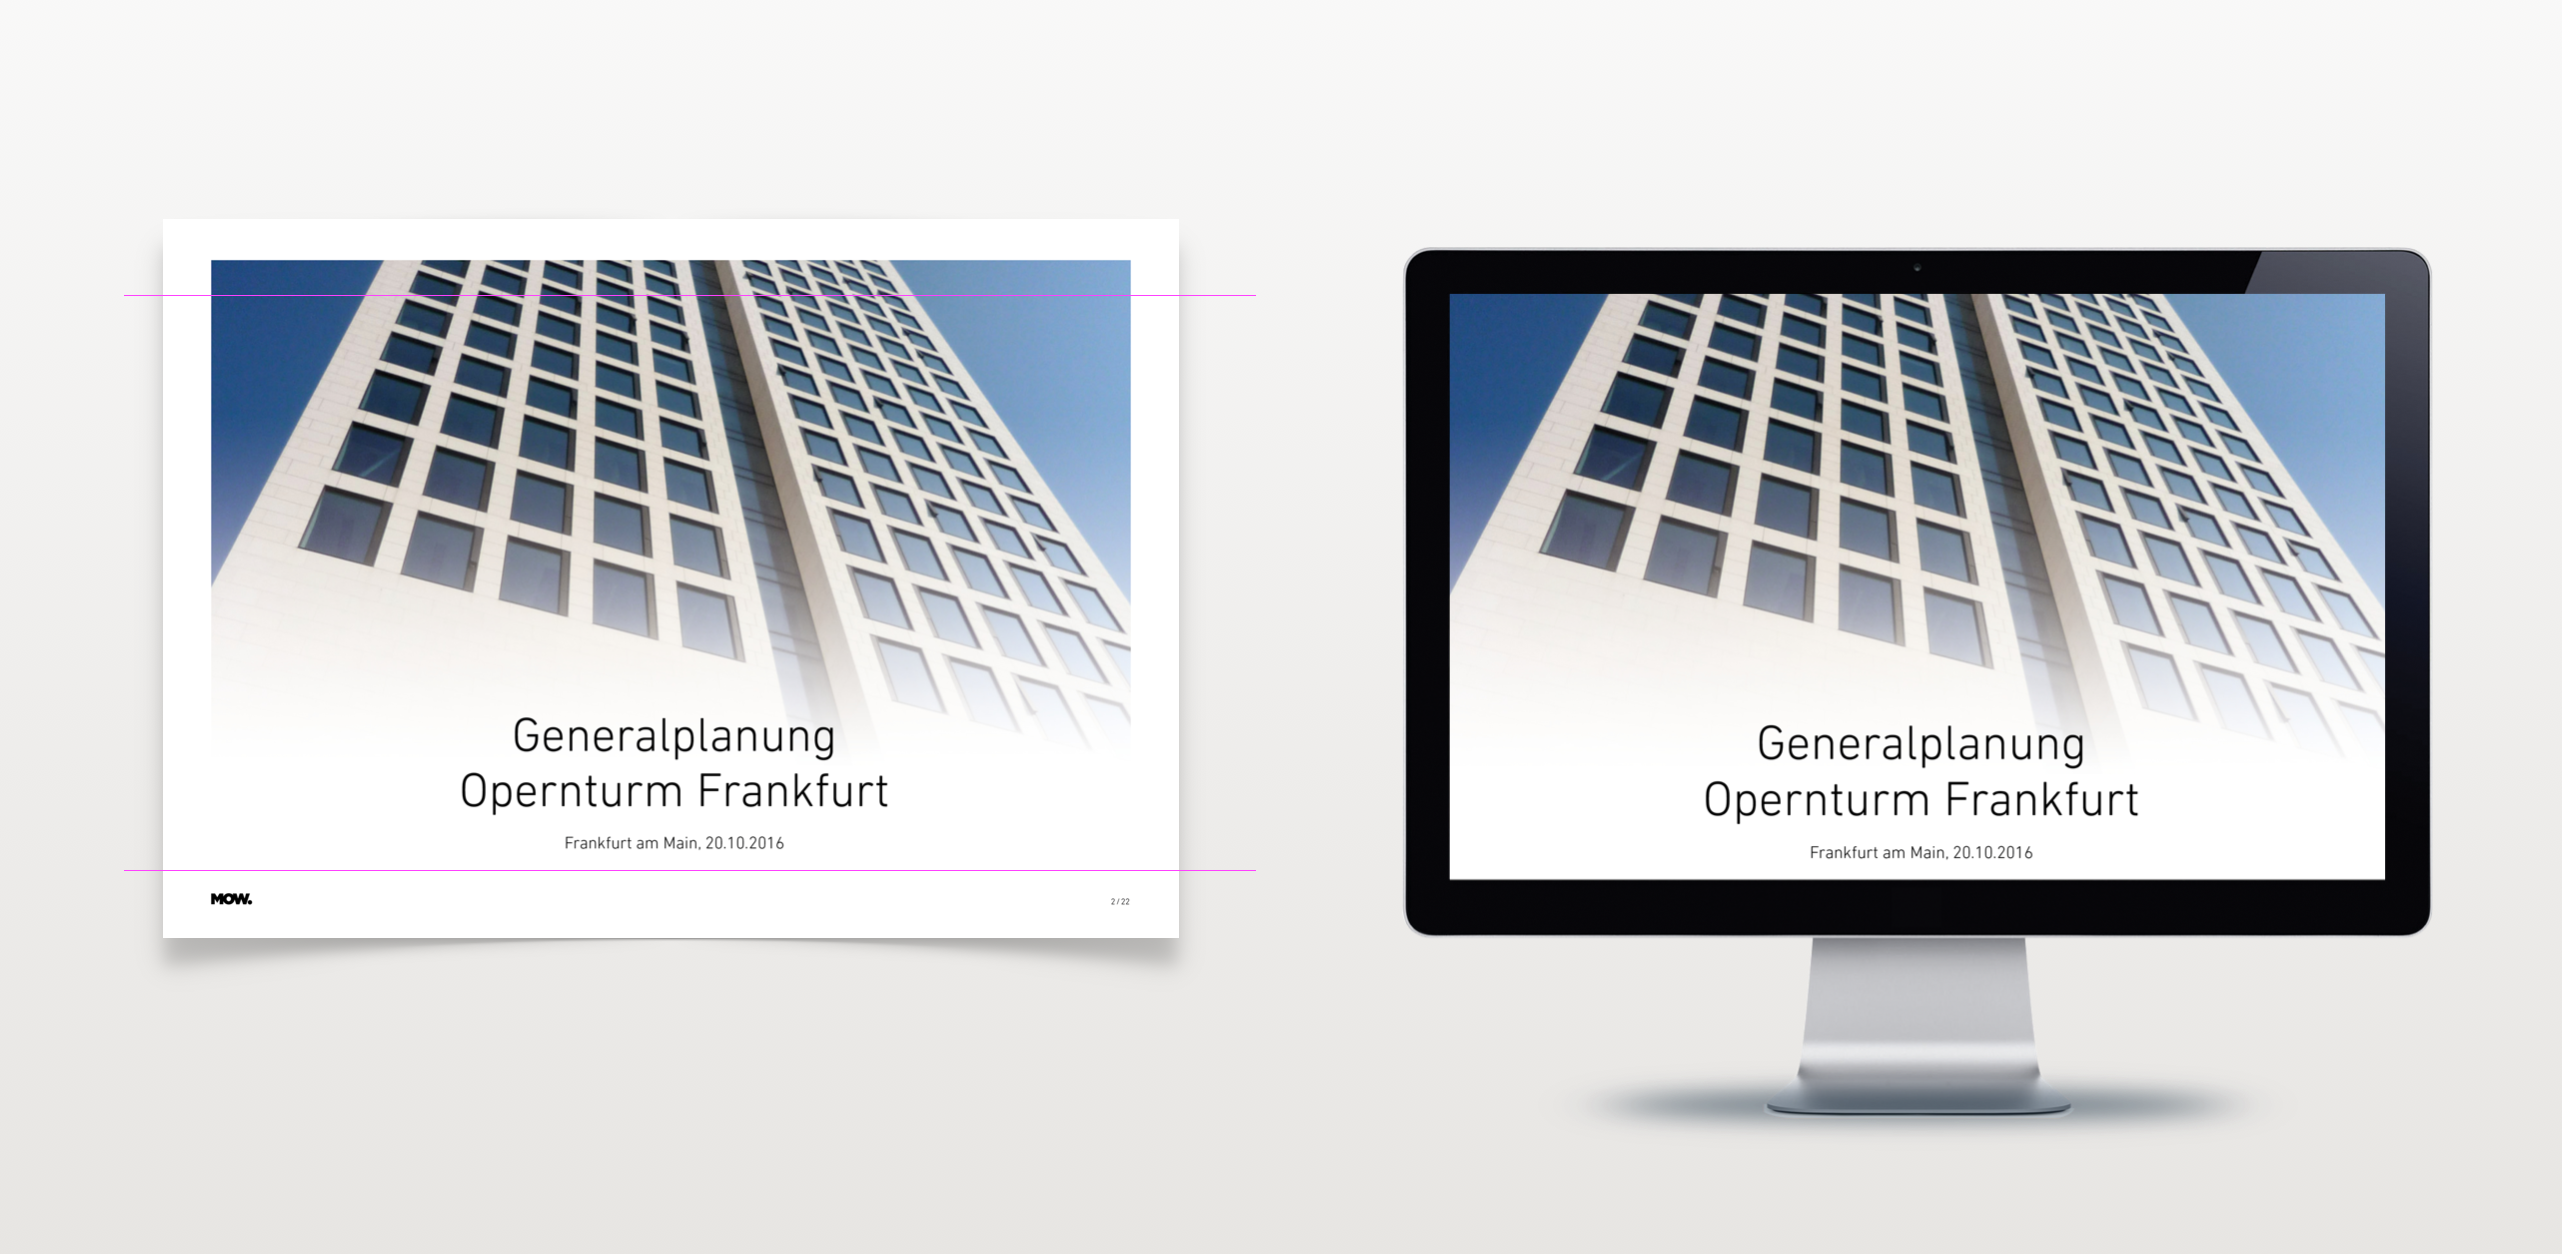 Webdesign / Screendesign - MOW Architekten Generalplaner